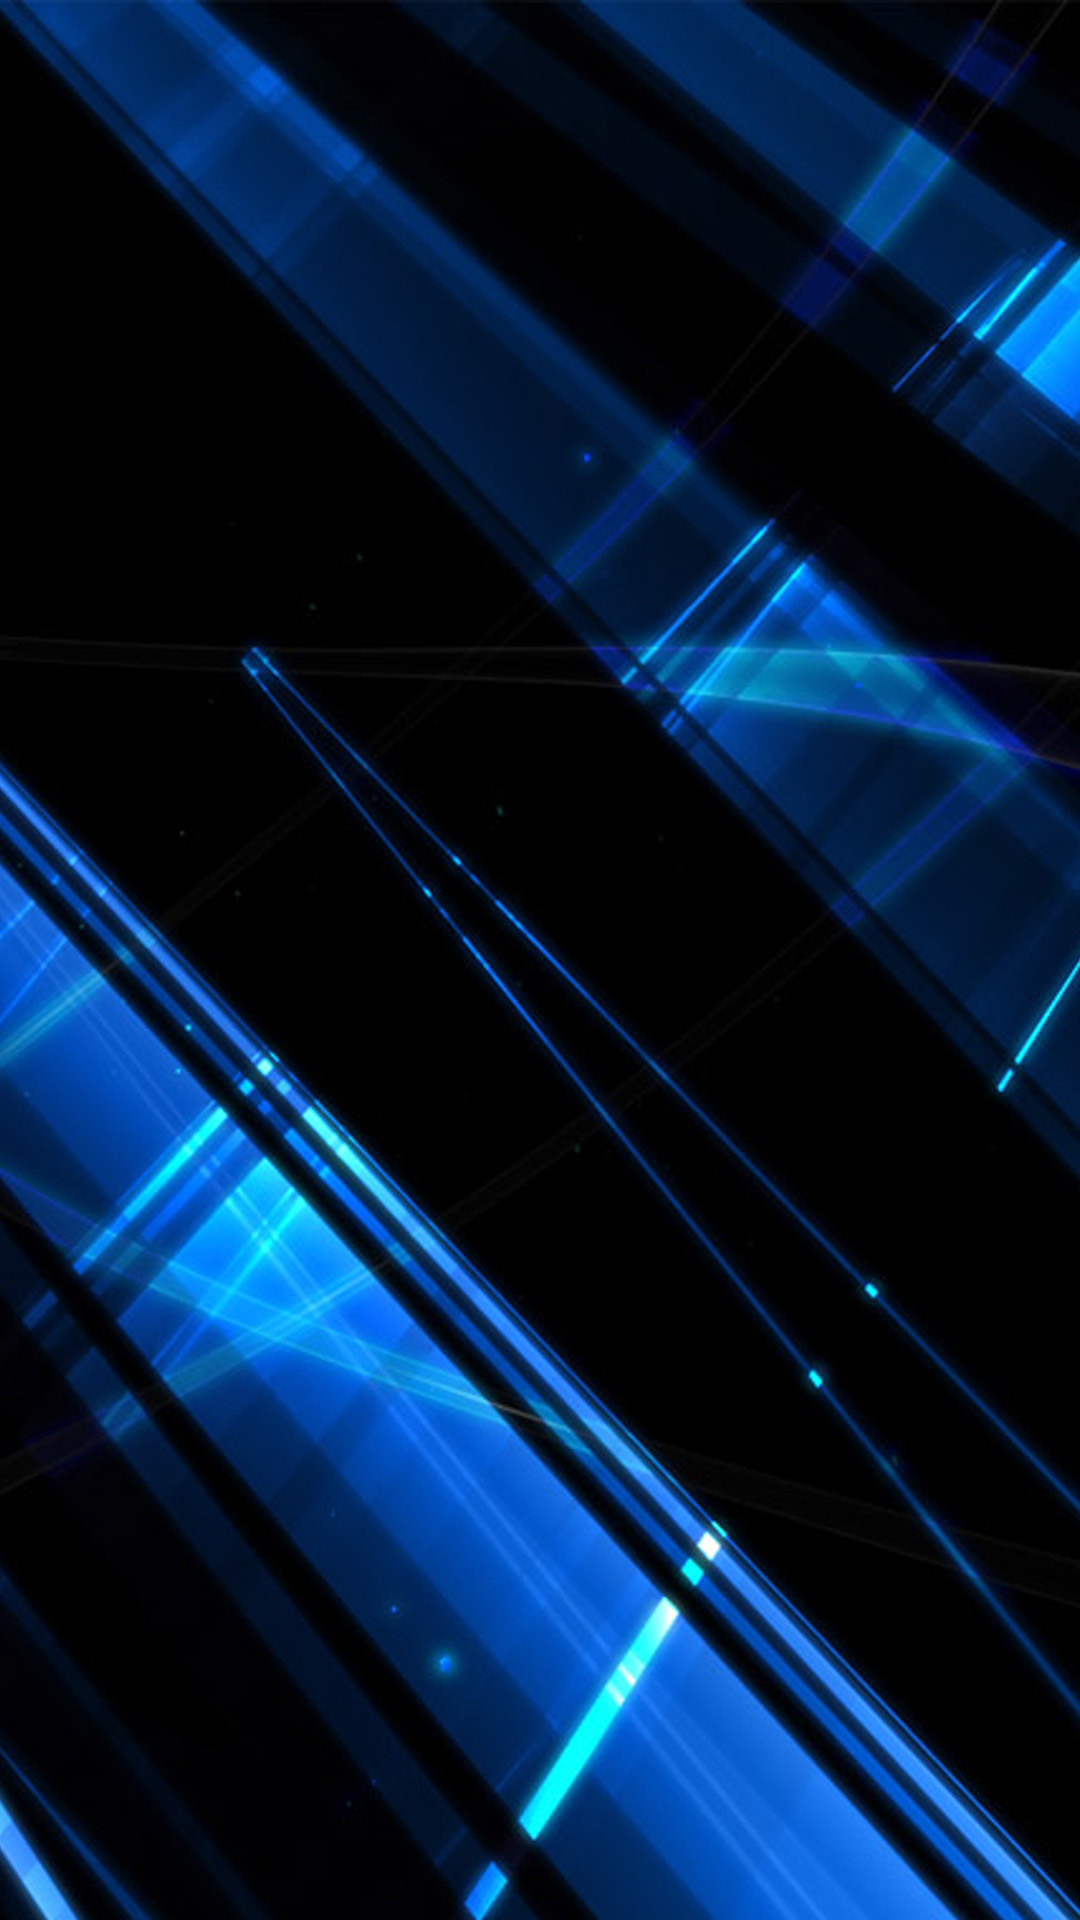 fond d'écran abstrait bleu,bleu,bleu électrique,lumière,ligne,bleu cobalt